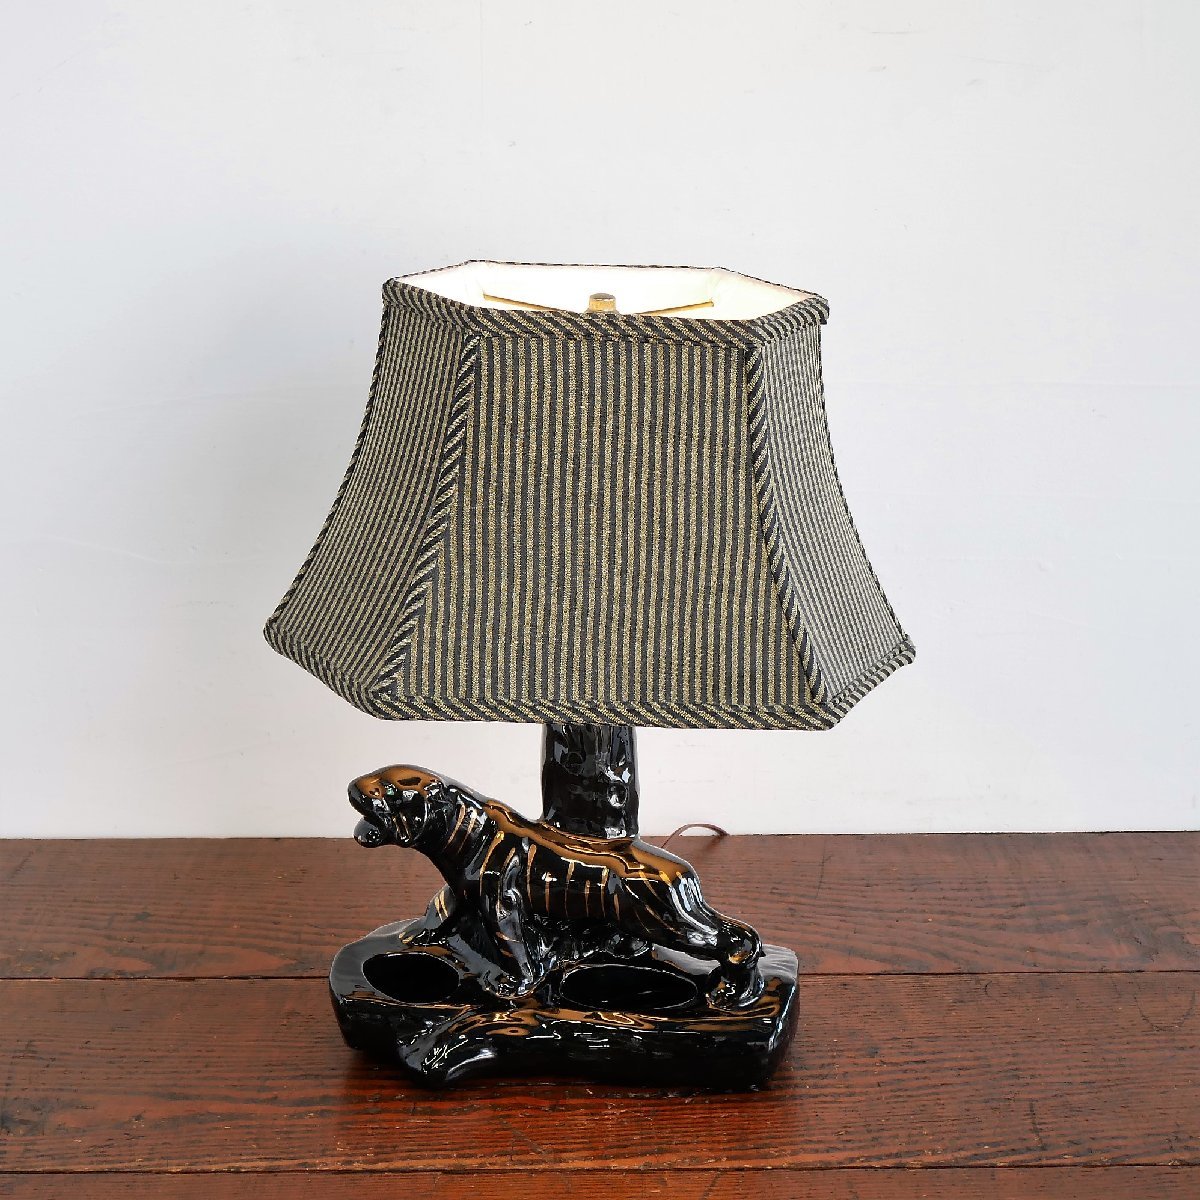 1950's アメリカアンティーク ブラックパンサー テーブルランプ フィフティーズ 照明 黒豹 陶器製 ロカビリー インテリア #502-27-178